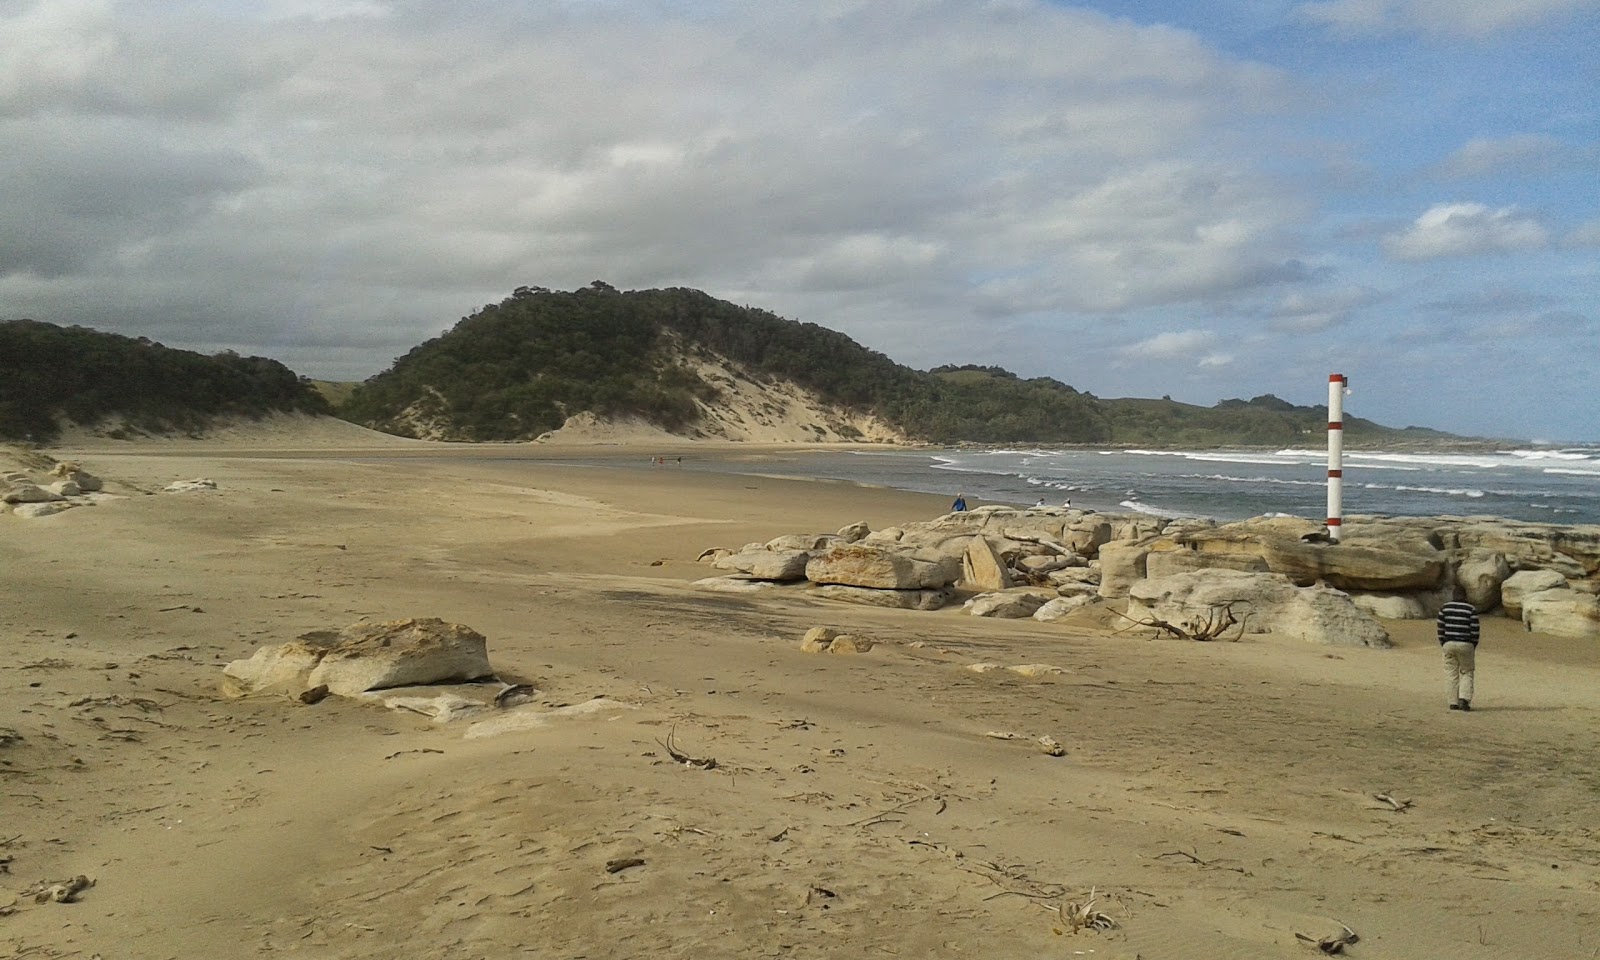 Zdjęcie Tezana beach z przestronna zatoka